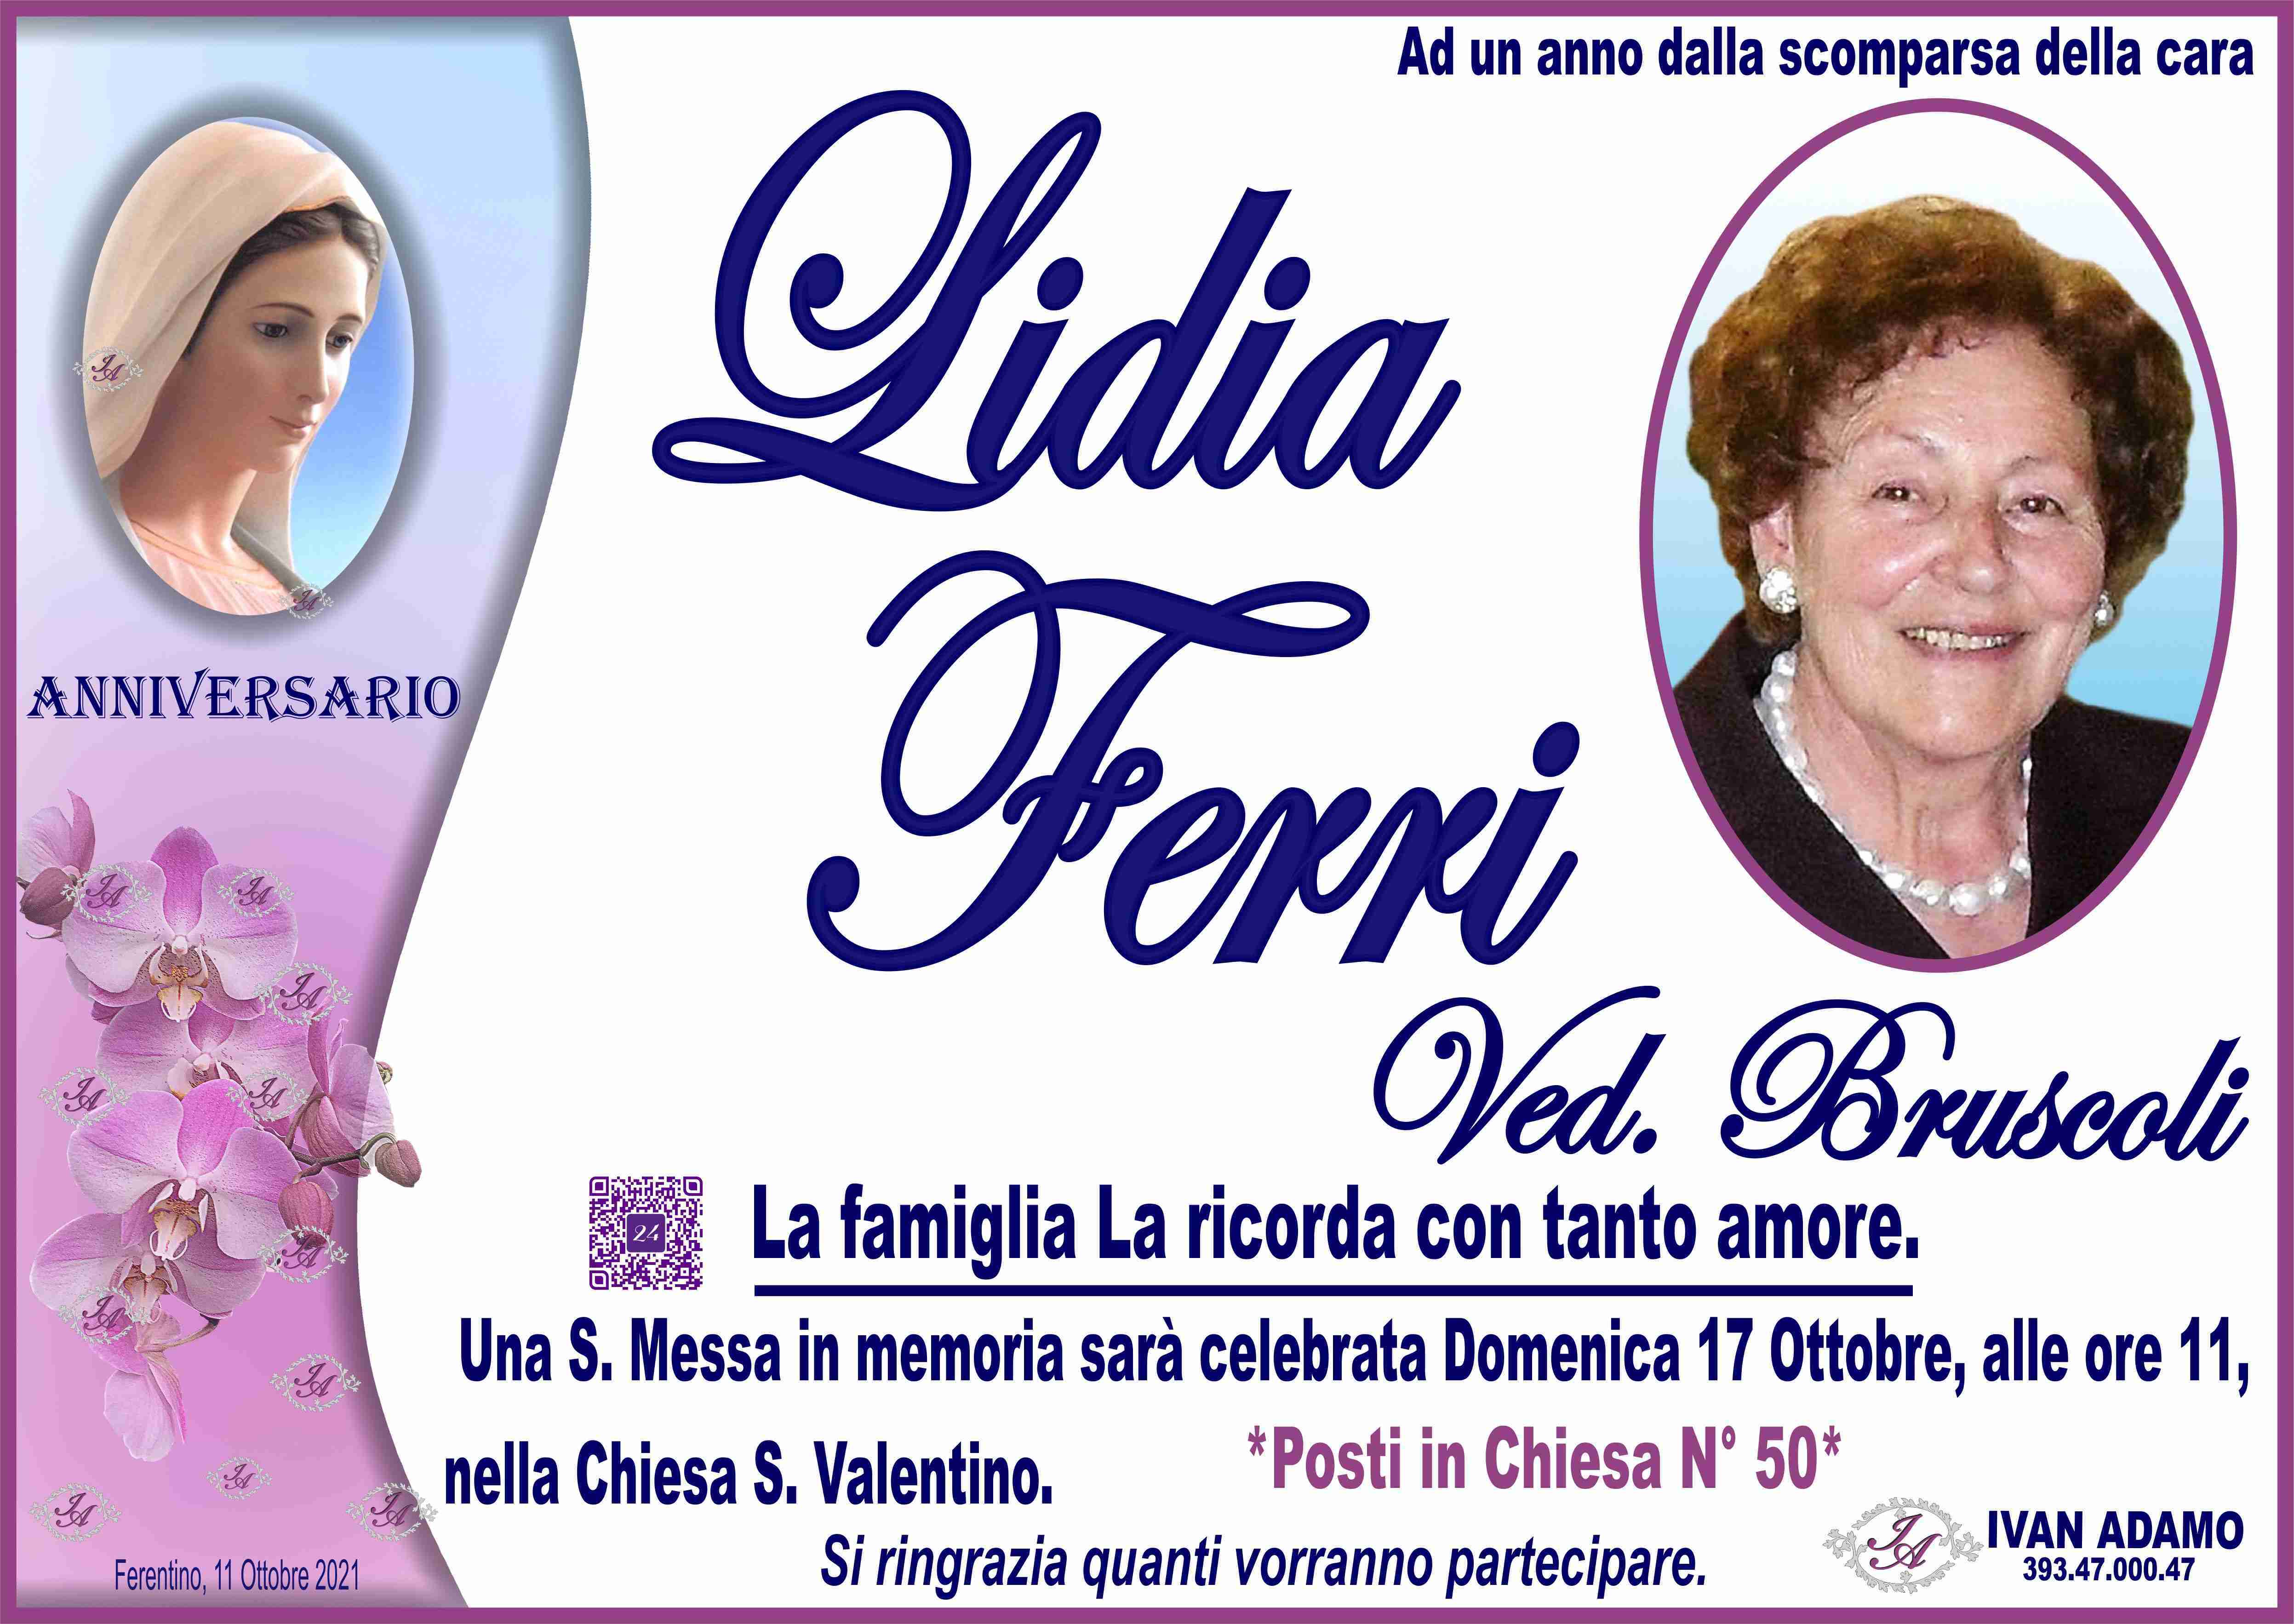 Lidia Ferri